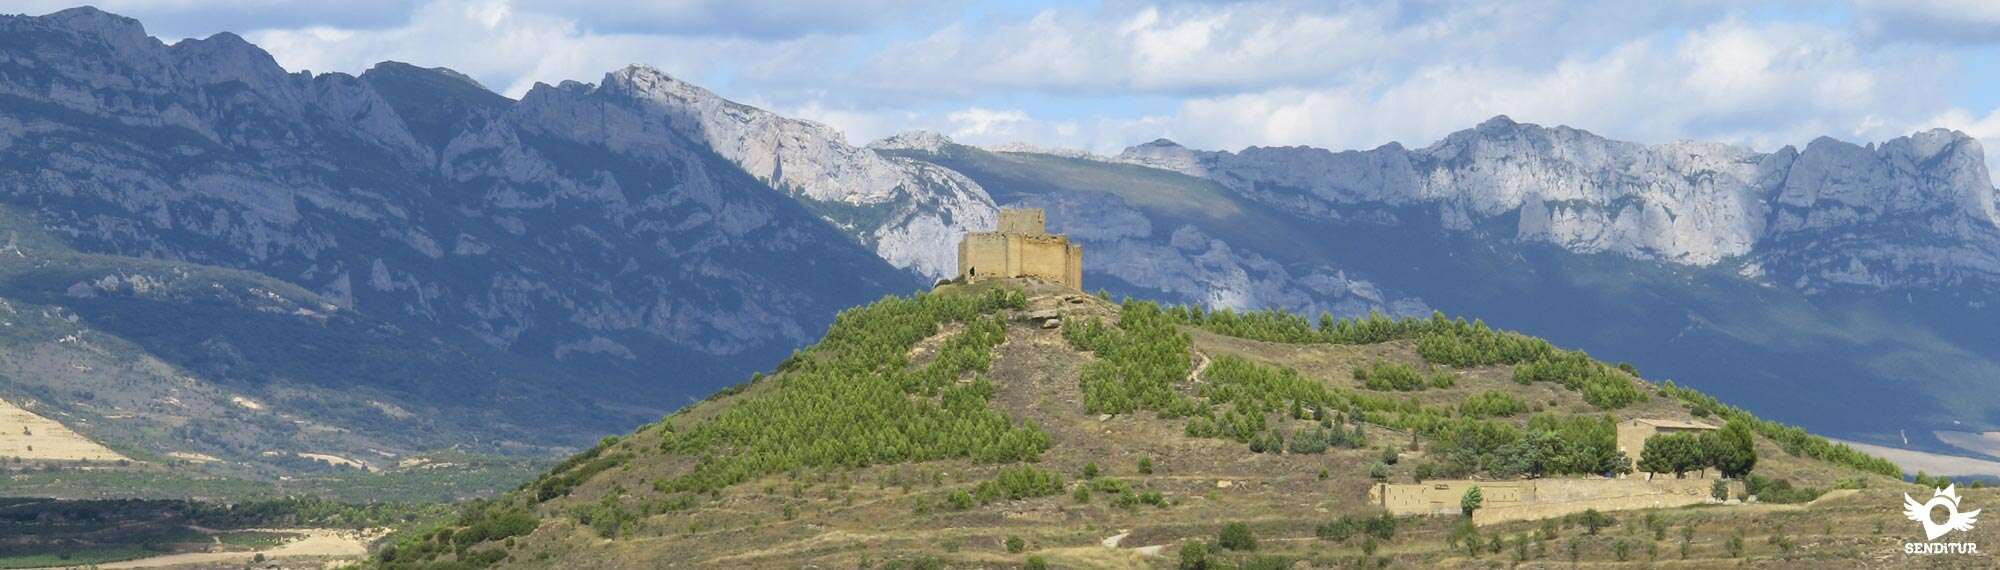 Castle of Davalillo